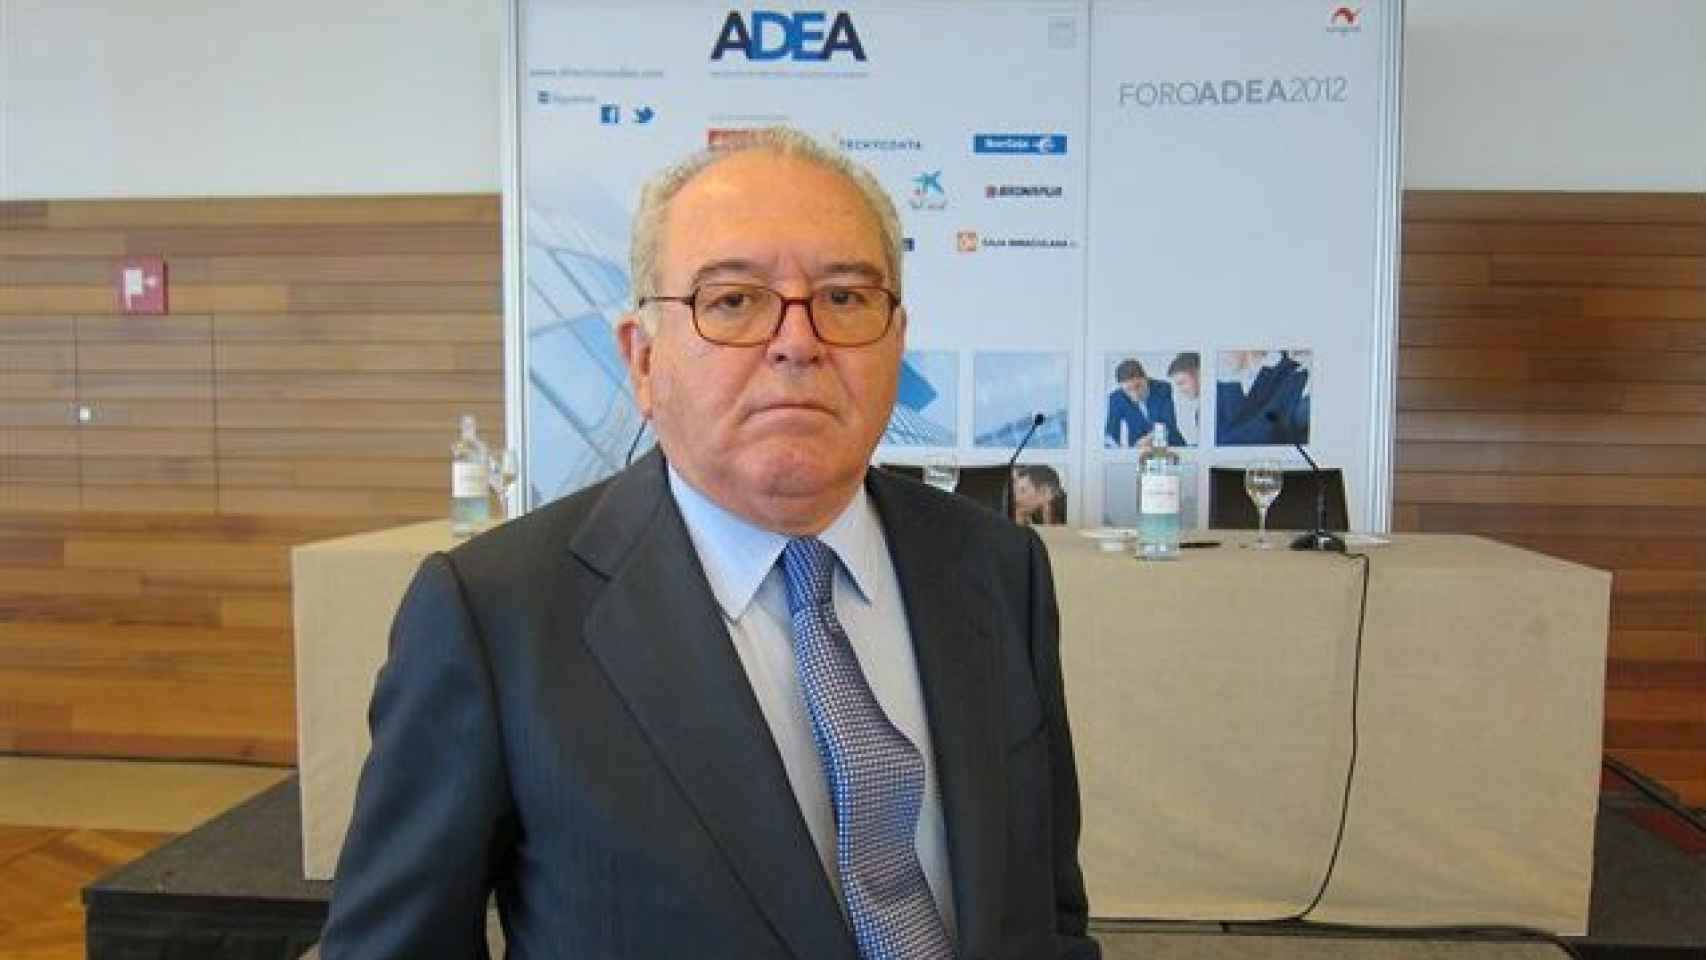 El exministro Eduardo Serra ha sido adjudicado con contratos millonarios del Ayuntamiento de BCN / EUROPA PRESS